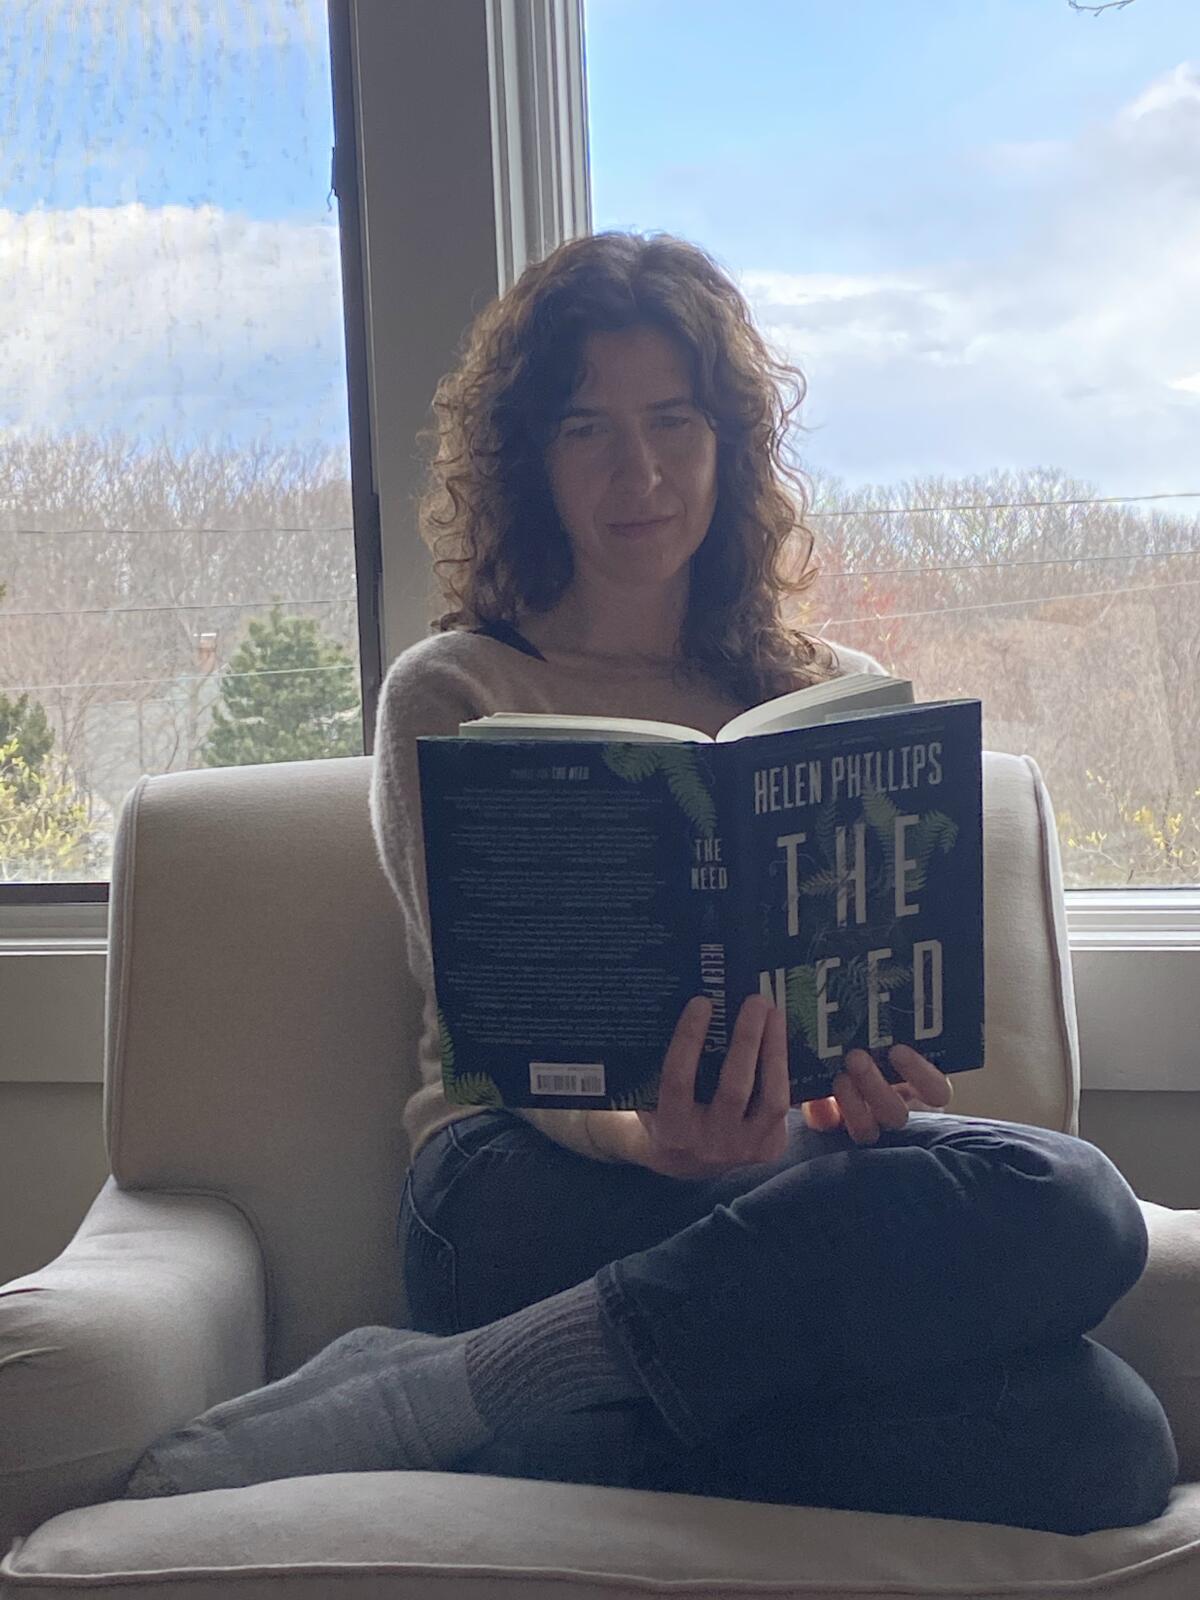 Anna Solomon reads Helen Phillips' novel "The Need" in quarantine in Massachusetts.